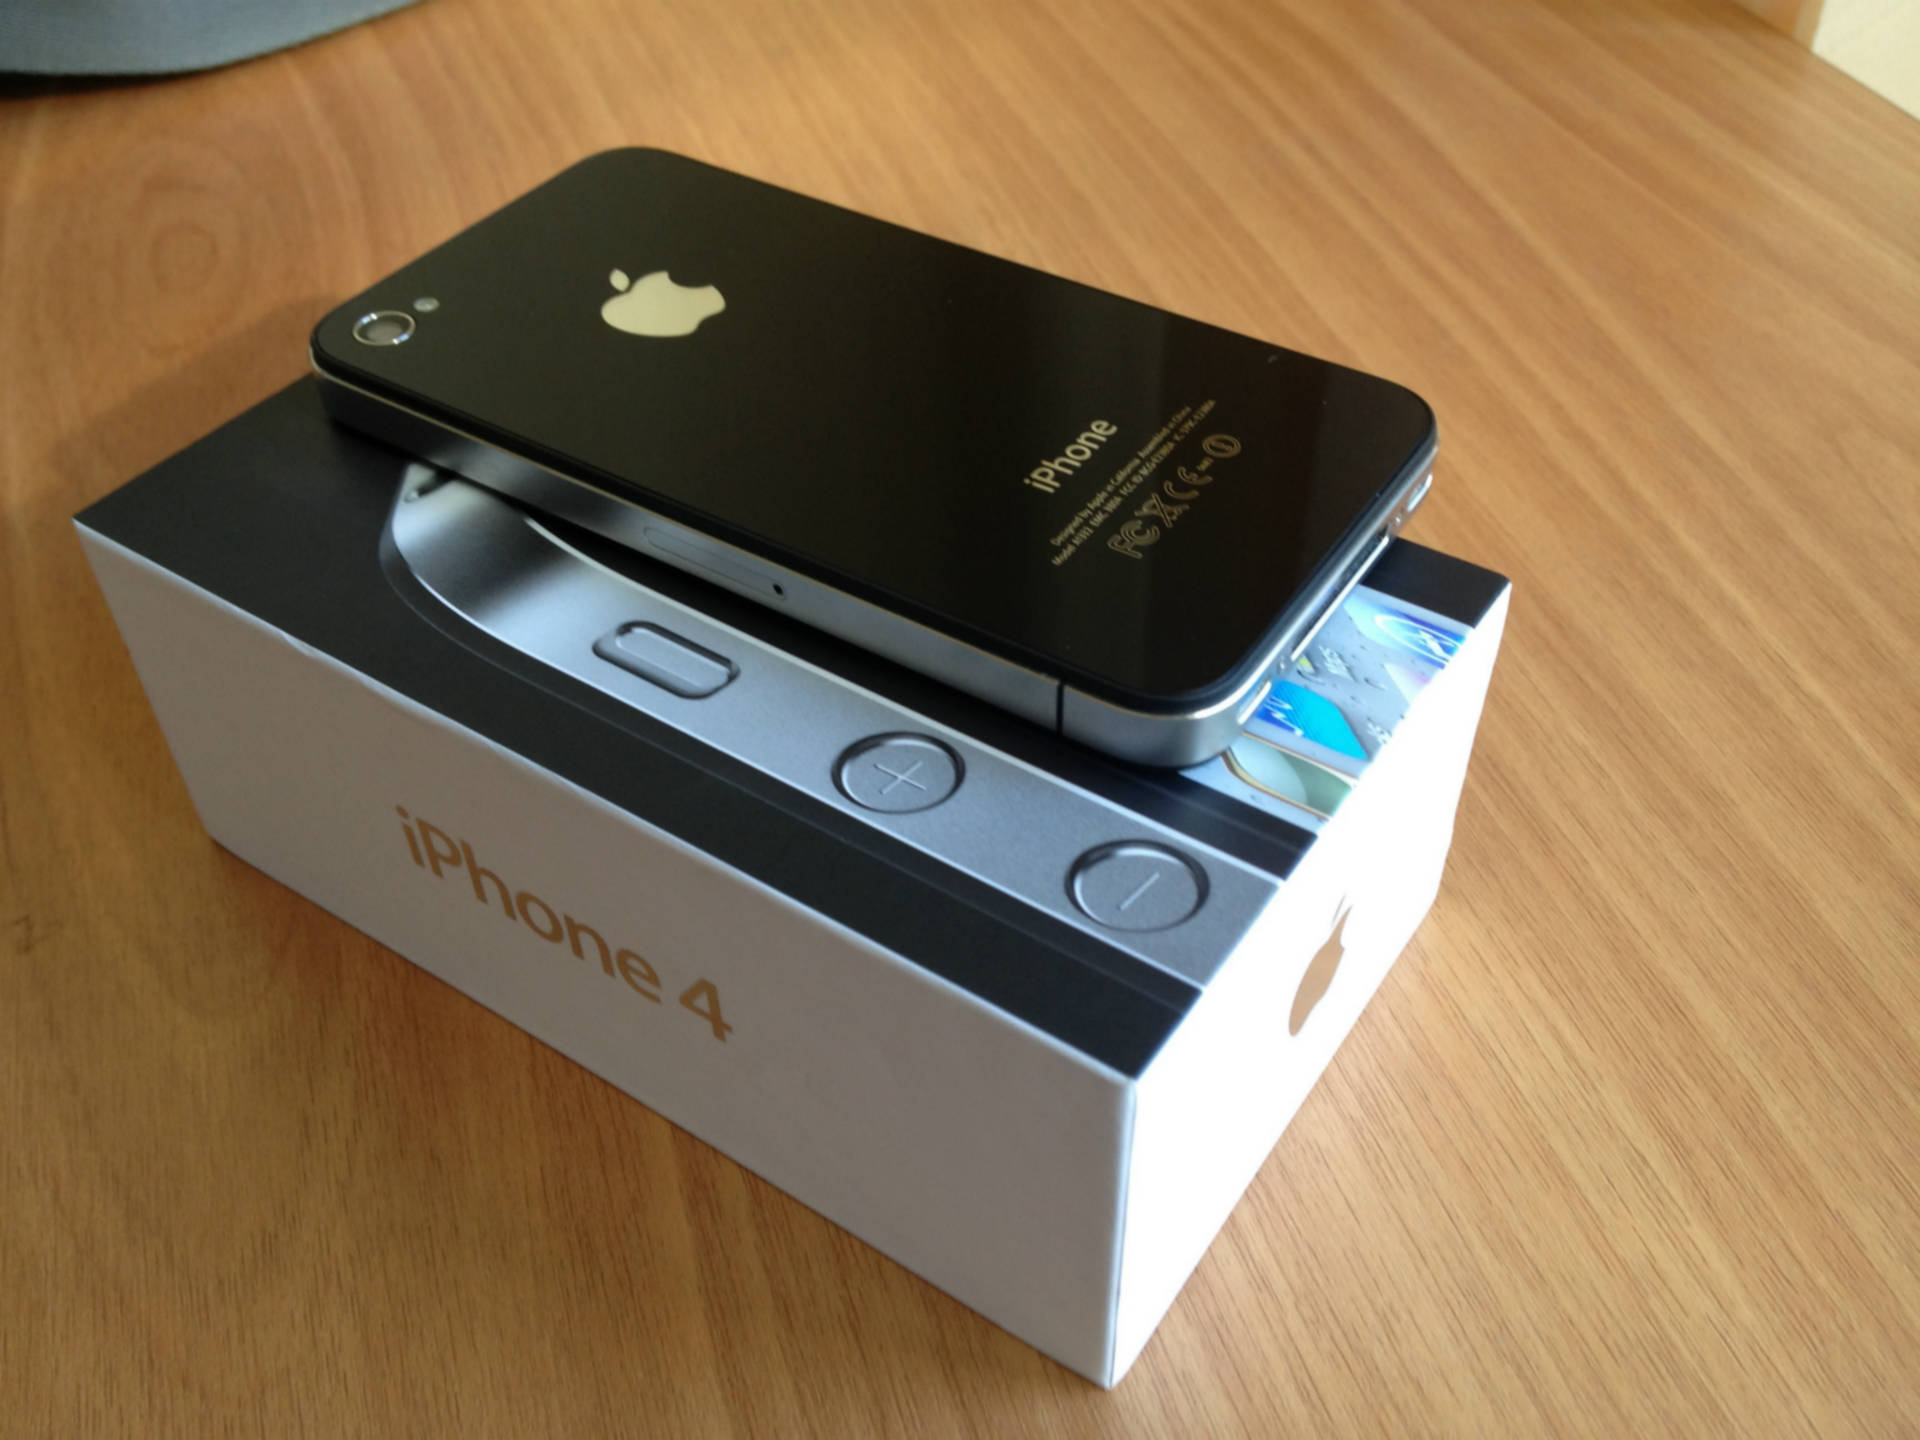 Купить айфон в уссурийске. Iphone 4s. Iphone 4s 16gb. Apple iphone 4 16gb. Apple iphone 4s 16gb.